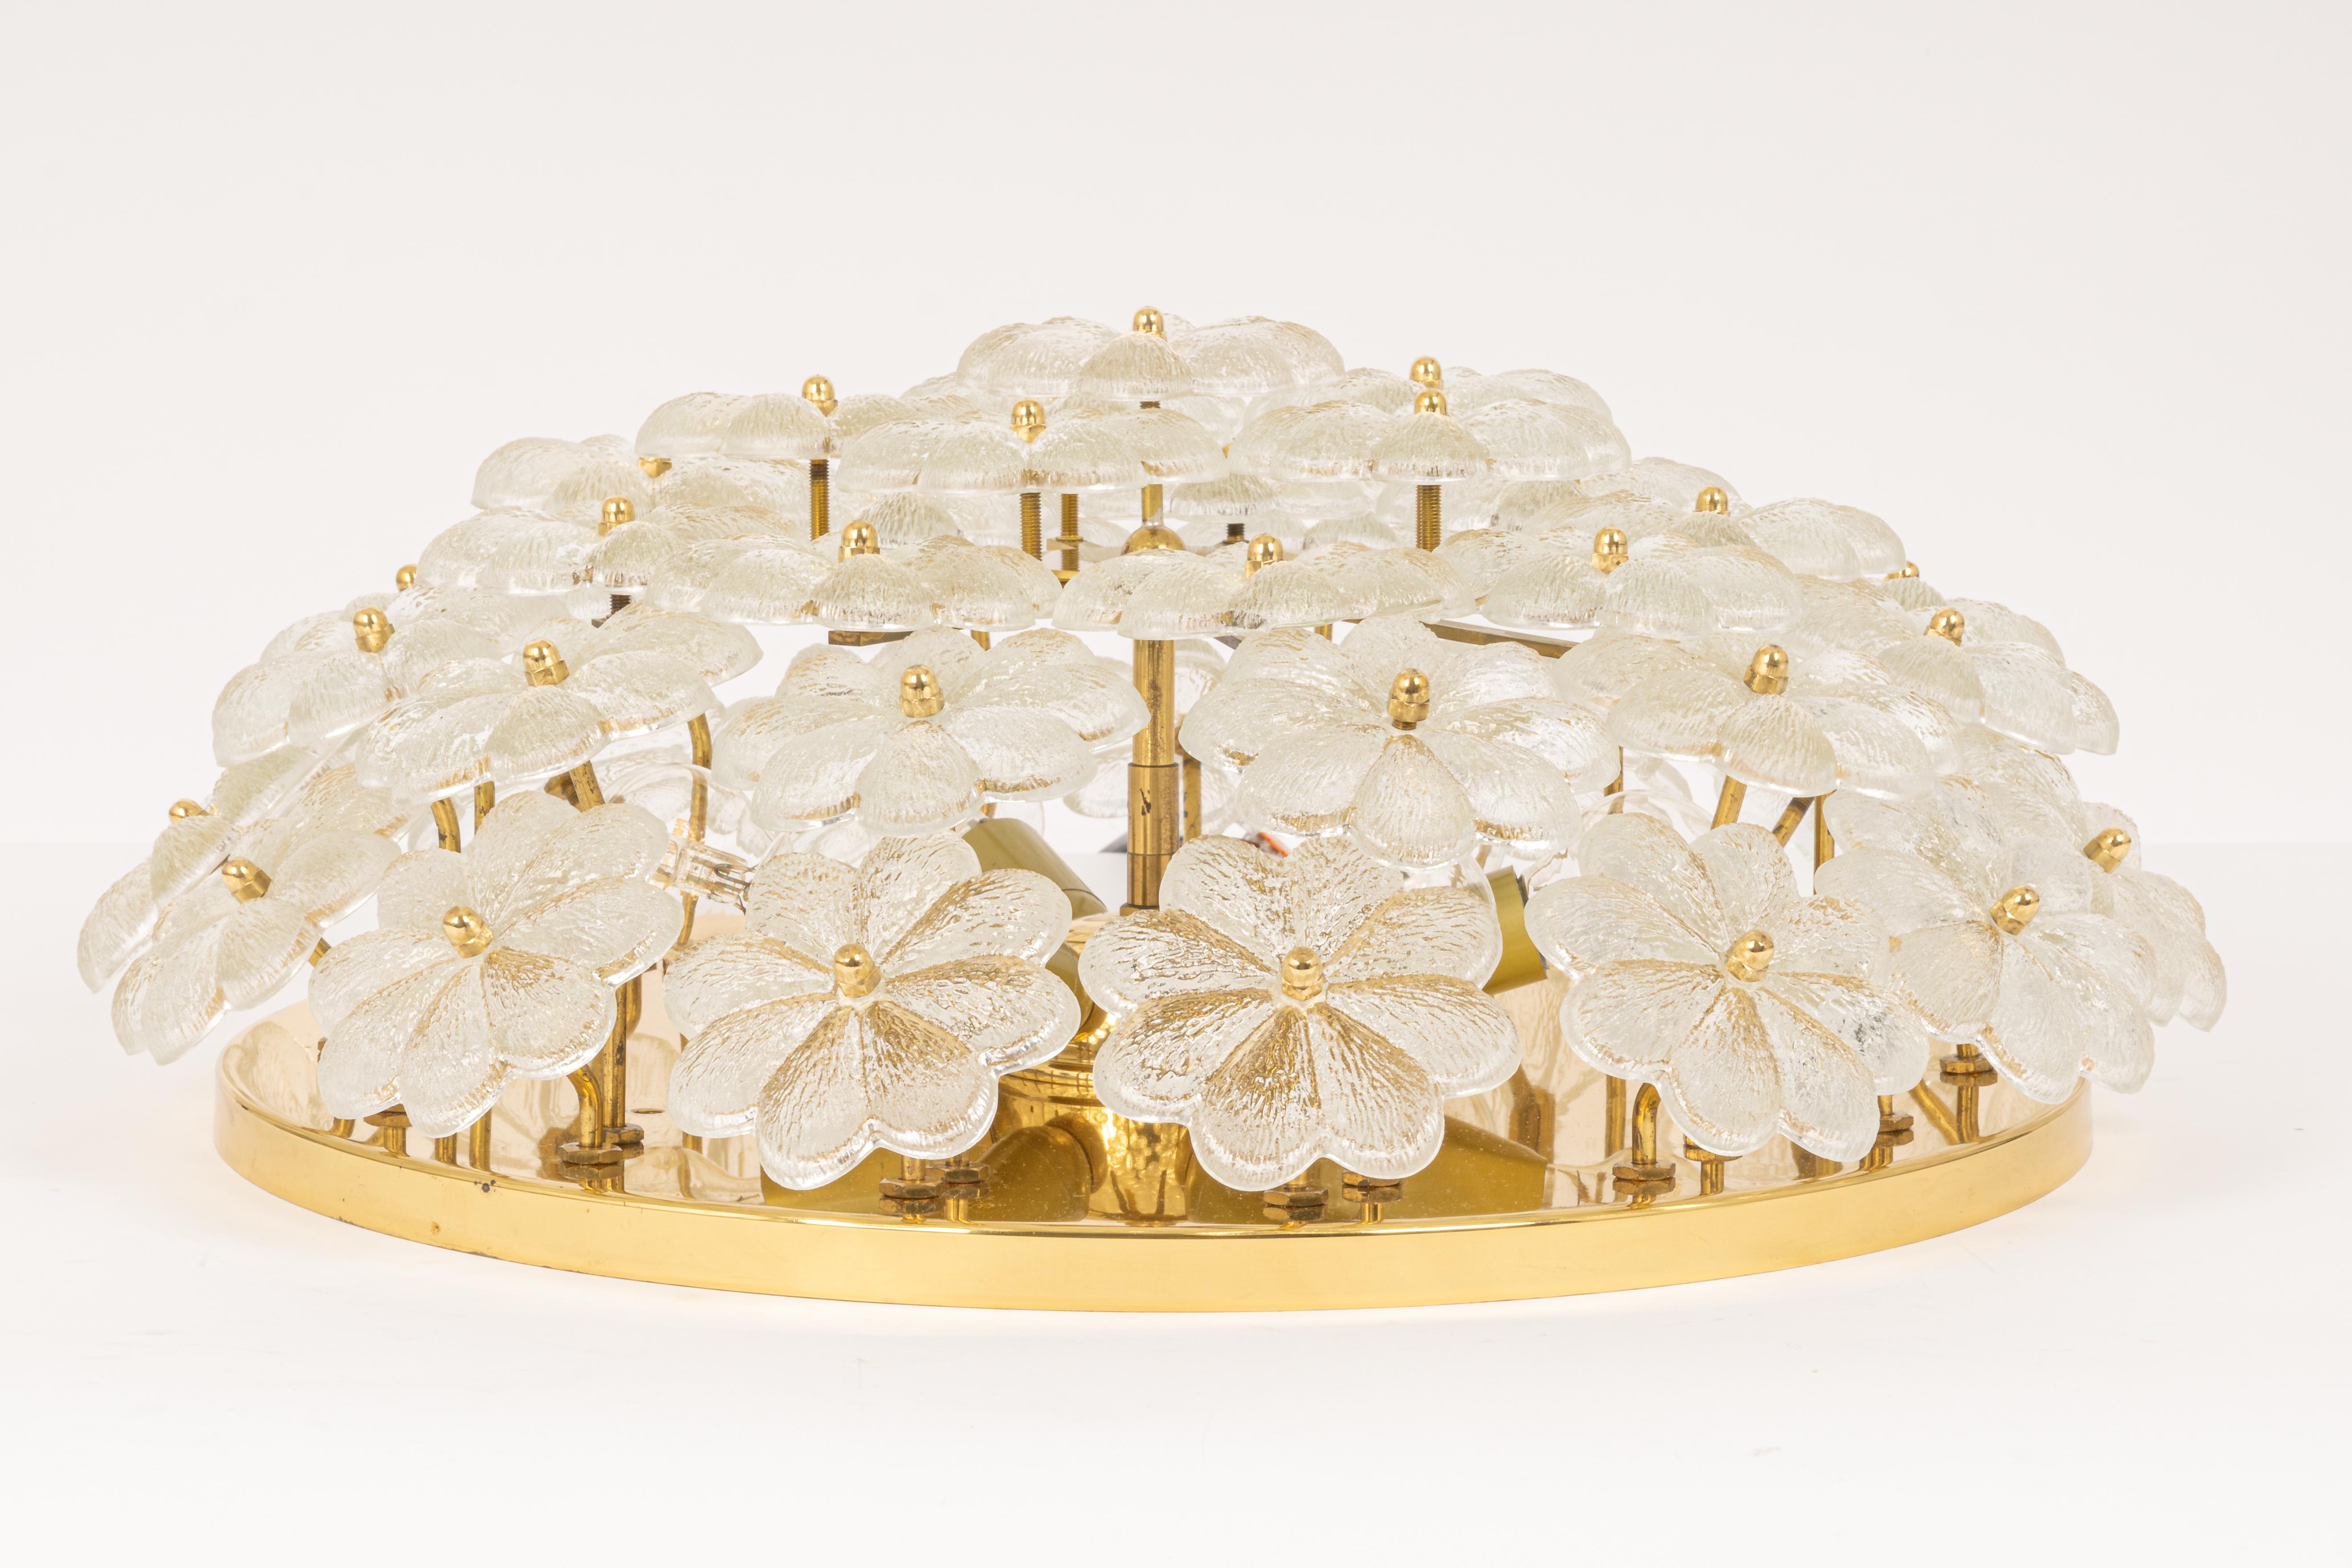 Lampe ou applique encastrée du milieu du siècle dernier avec 42 fleurs en verre de Murano sur une base en laiton poli, fabriquée par Ernst Palme en Allemagne dans les années 1970.

De haute qualité et en très bon état. Nettoyé, bien câblé et prêt à